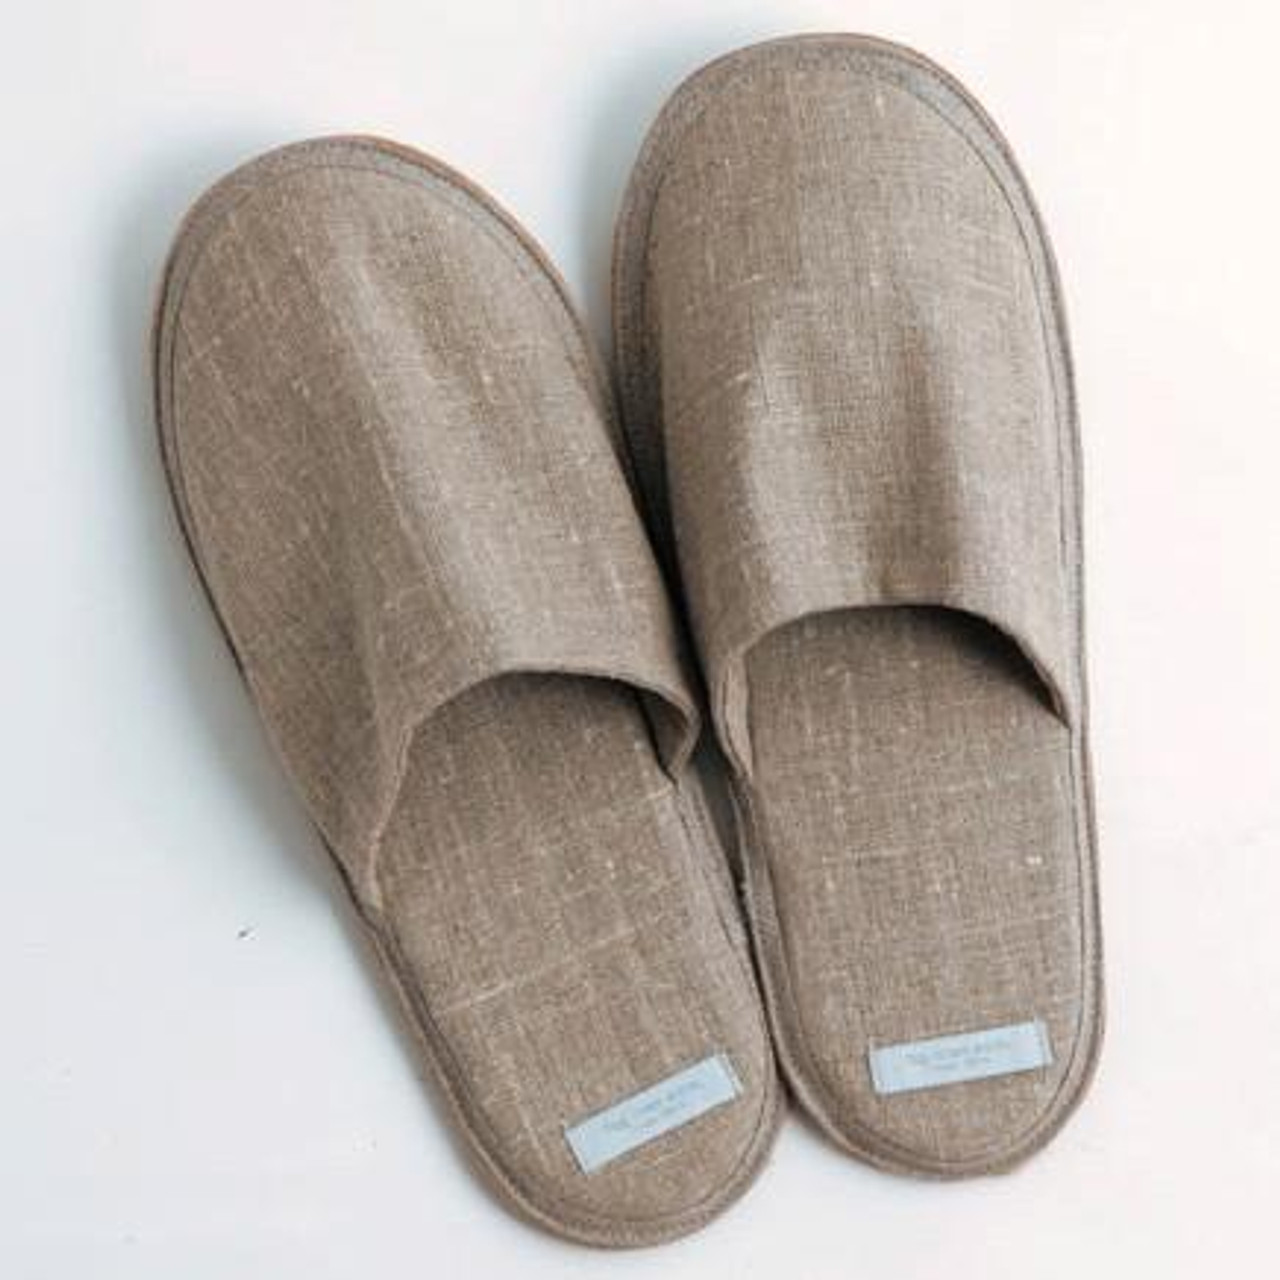 padded bedroom slippers